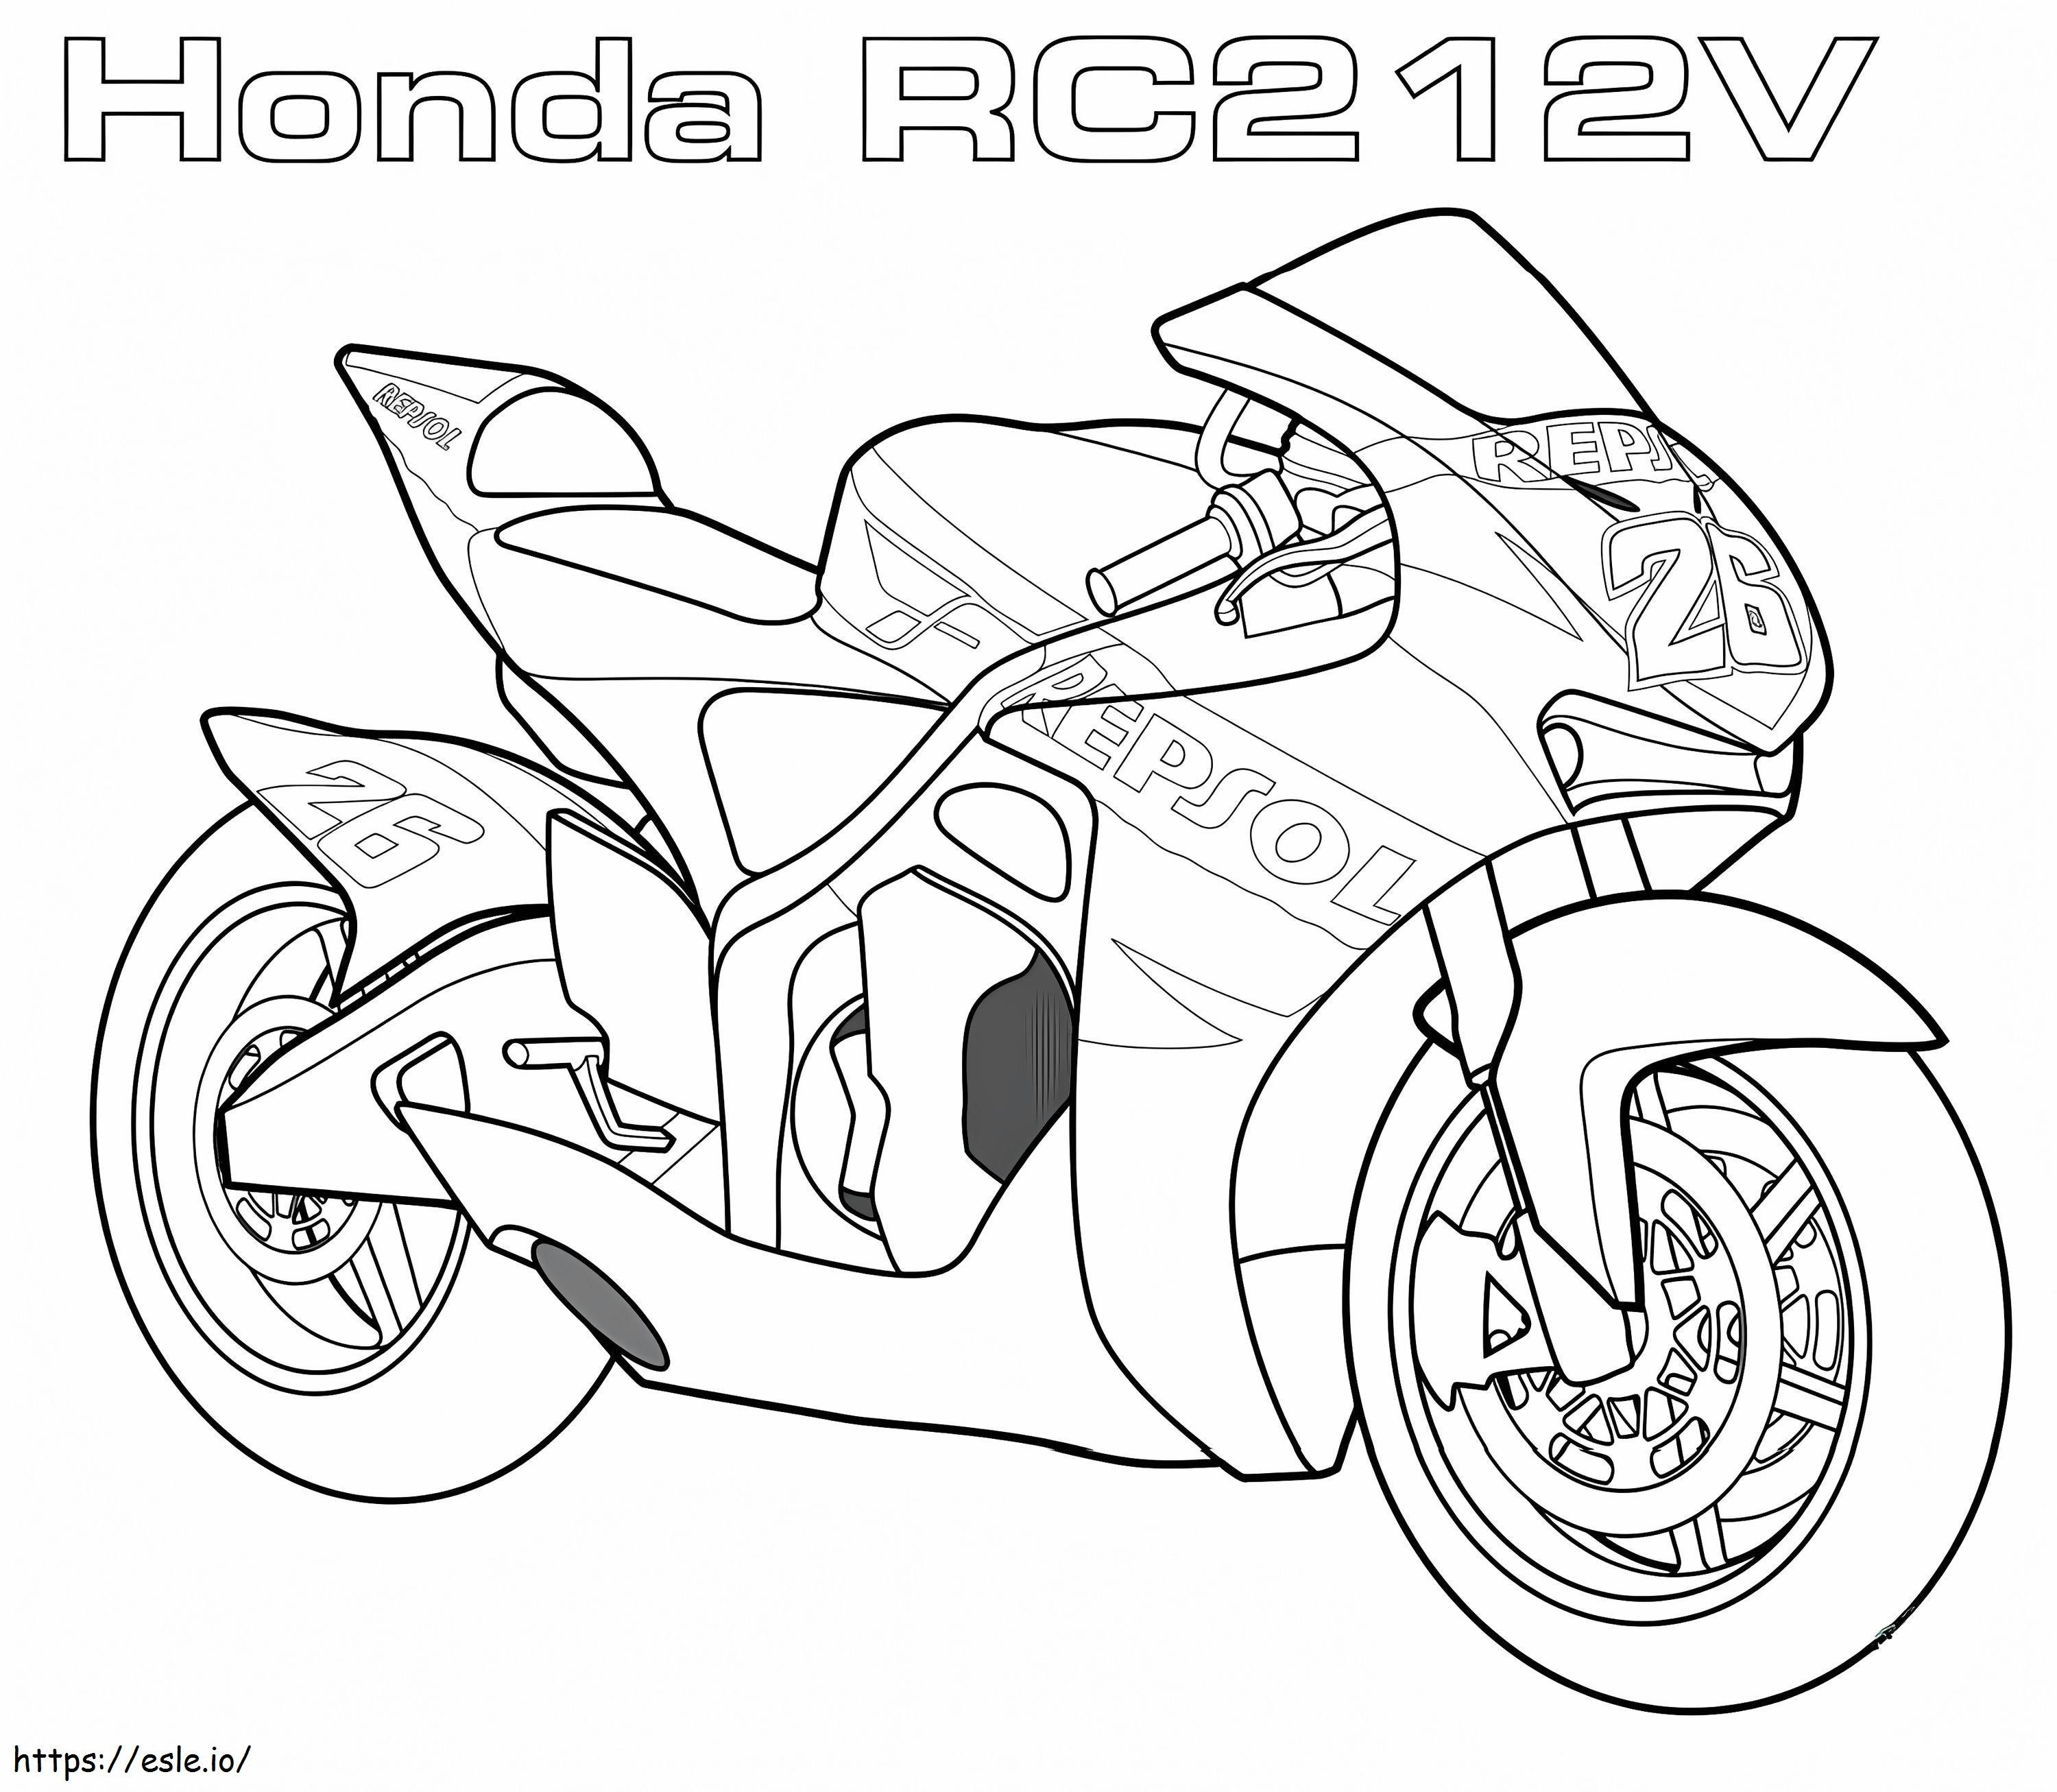 1560590239 Honda Rc2 V12 A4 boyama